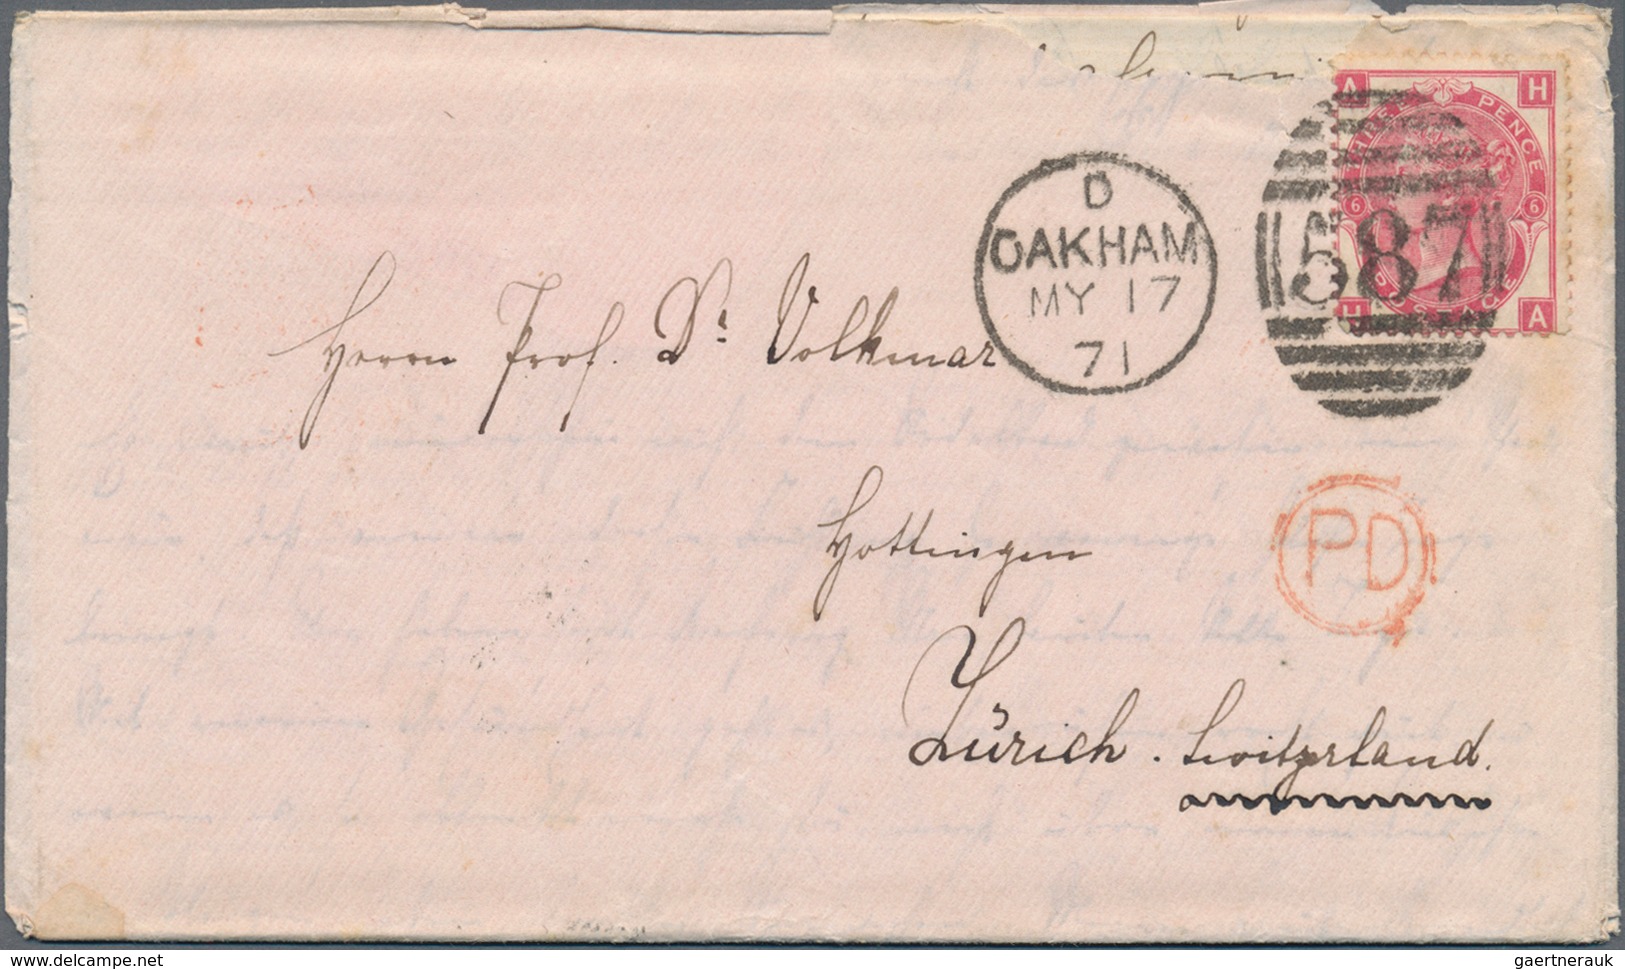 Nachlässe: 1832/1945, ca. 70 fast ausschließlich bessere Brief und Karten aus aller Welt. Bitte anse